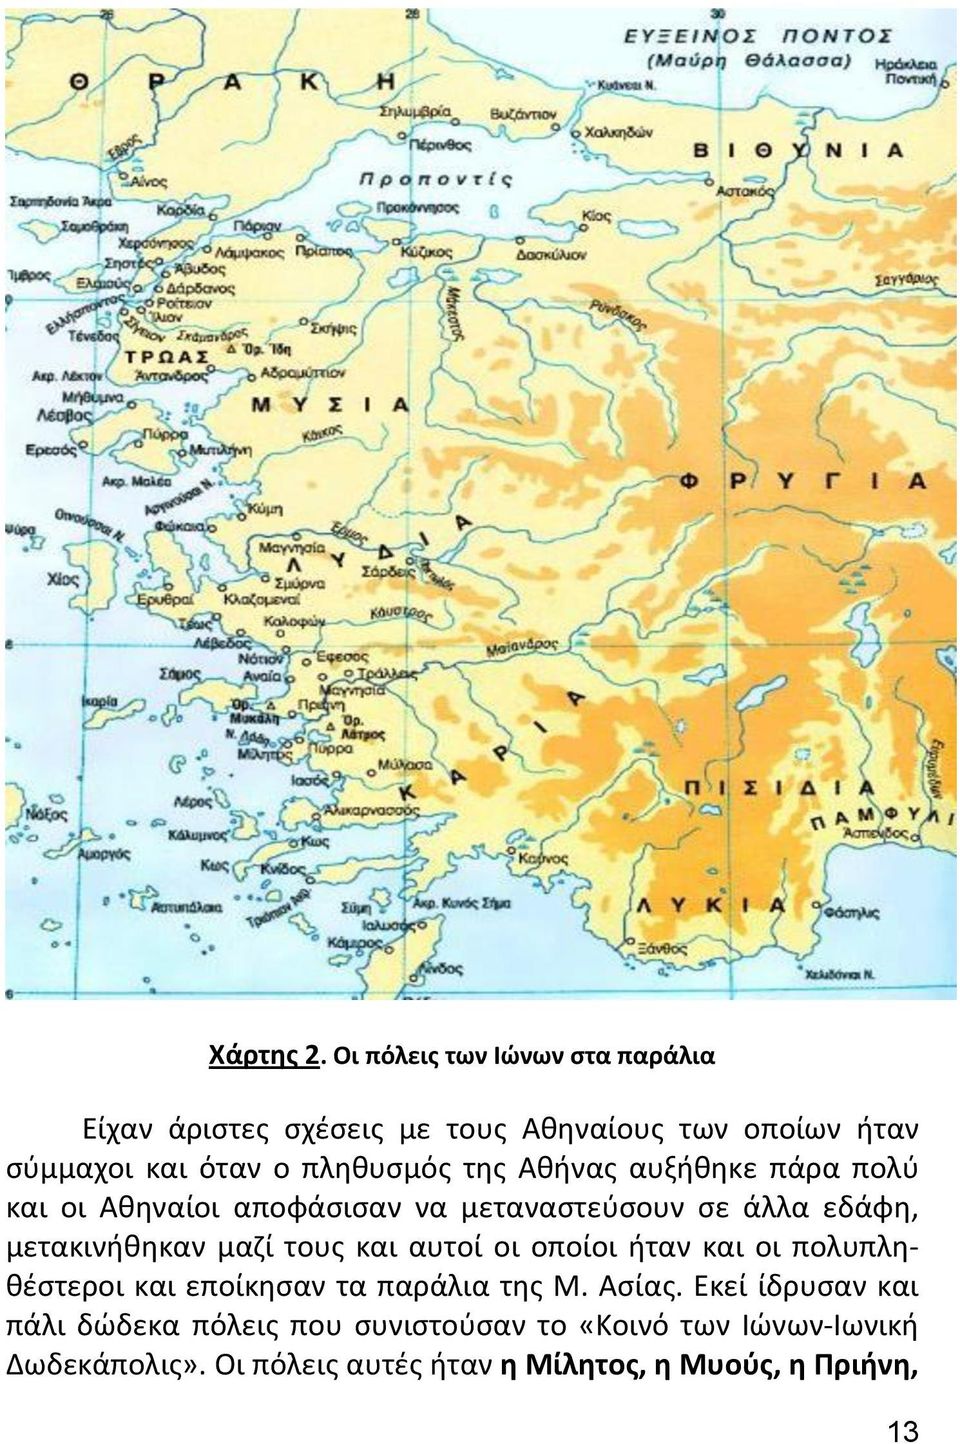 της Αθήνας αυξήθηκε πάρα πολύ και οι Αθηναίοι αποφάσισαν να μεταναστεύσουν σε άλλα εδάφη, μετακινήθηκαν μαζί τους και